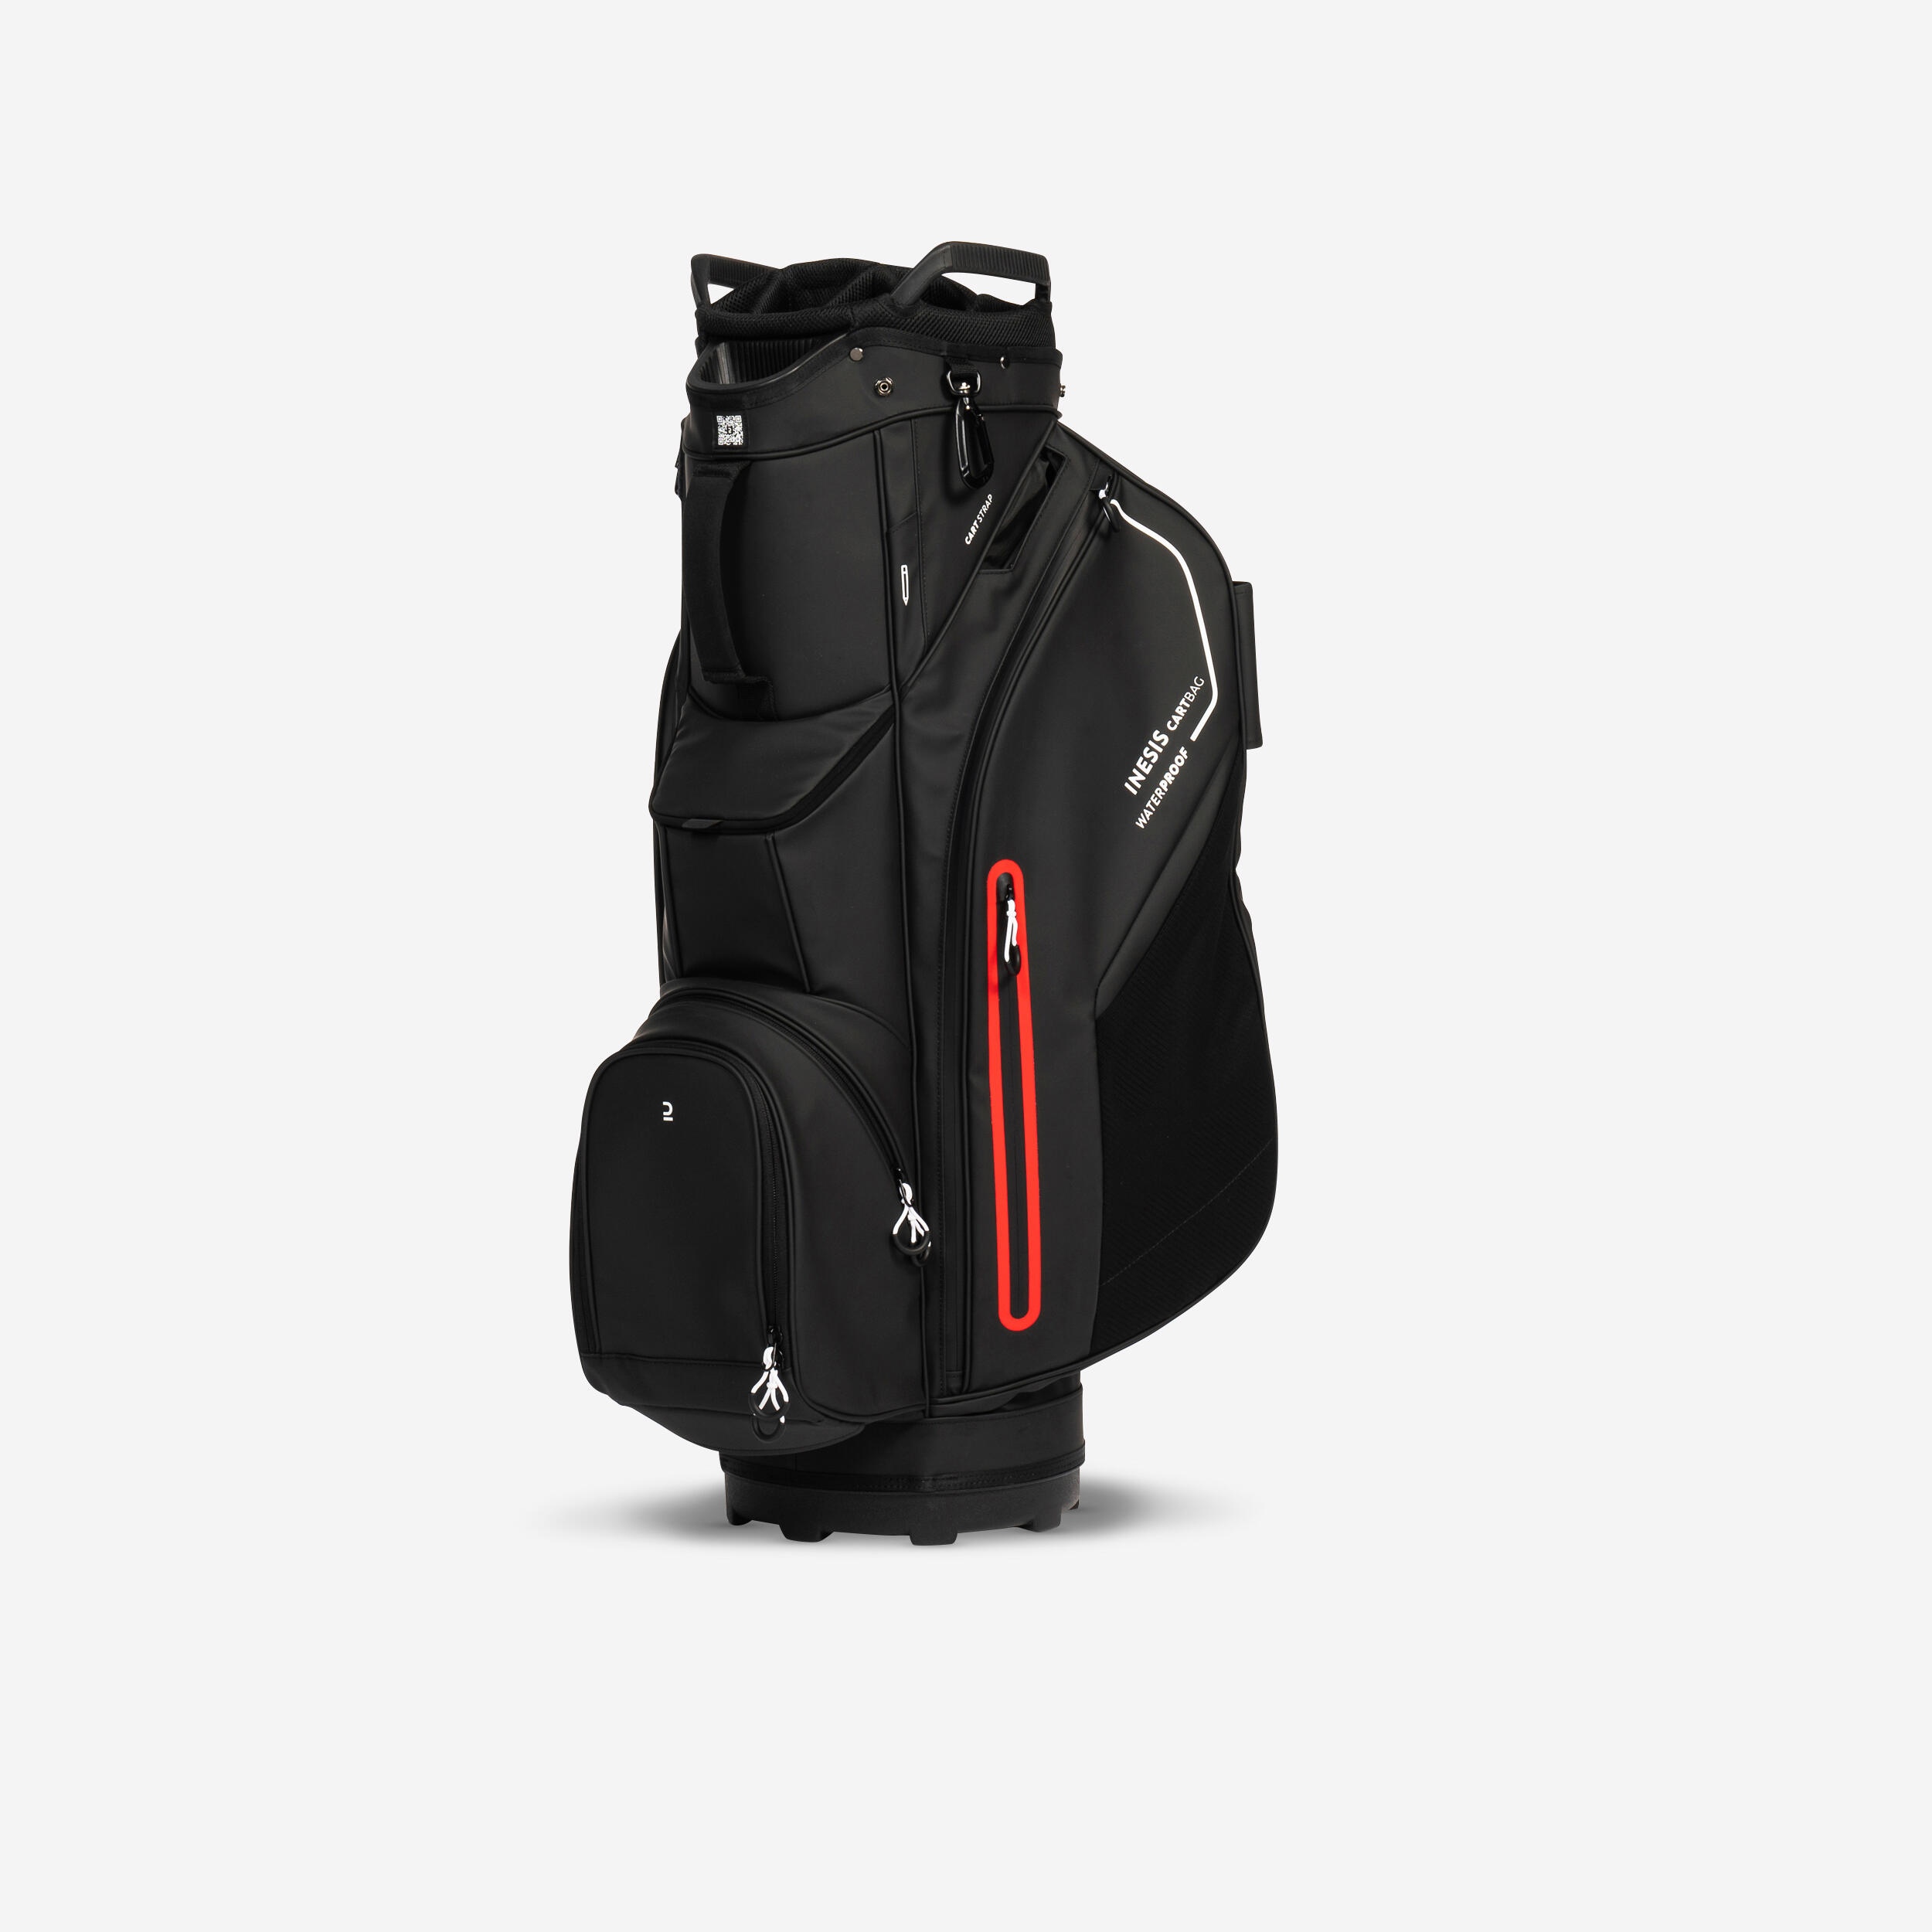 Golf trolley bag waterproof – INESIS cart black 1/12